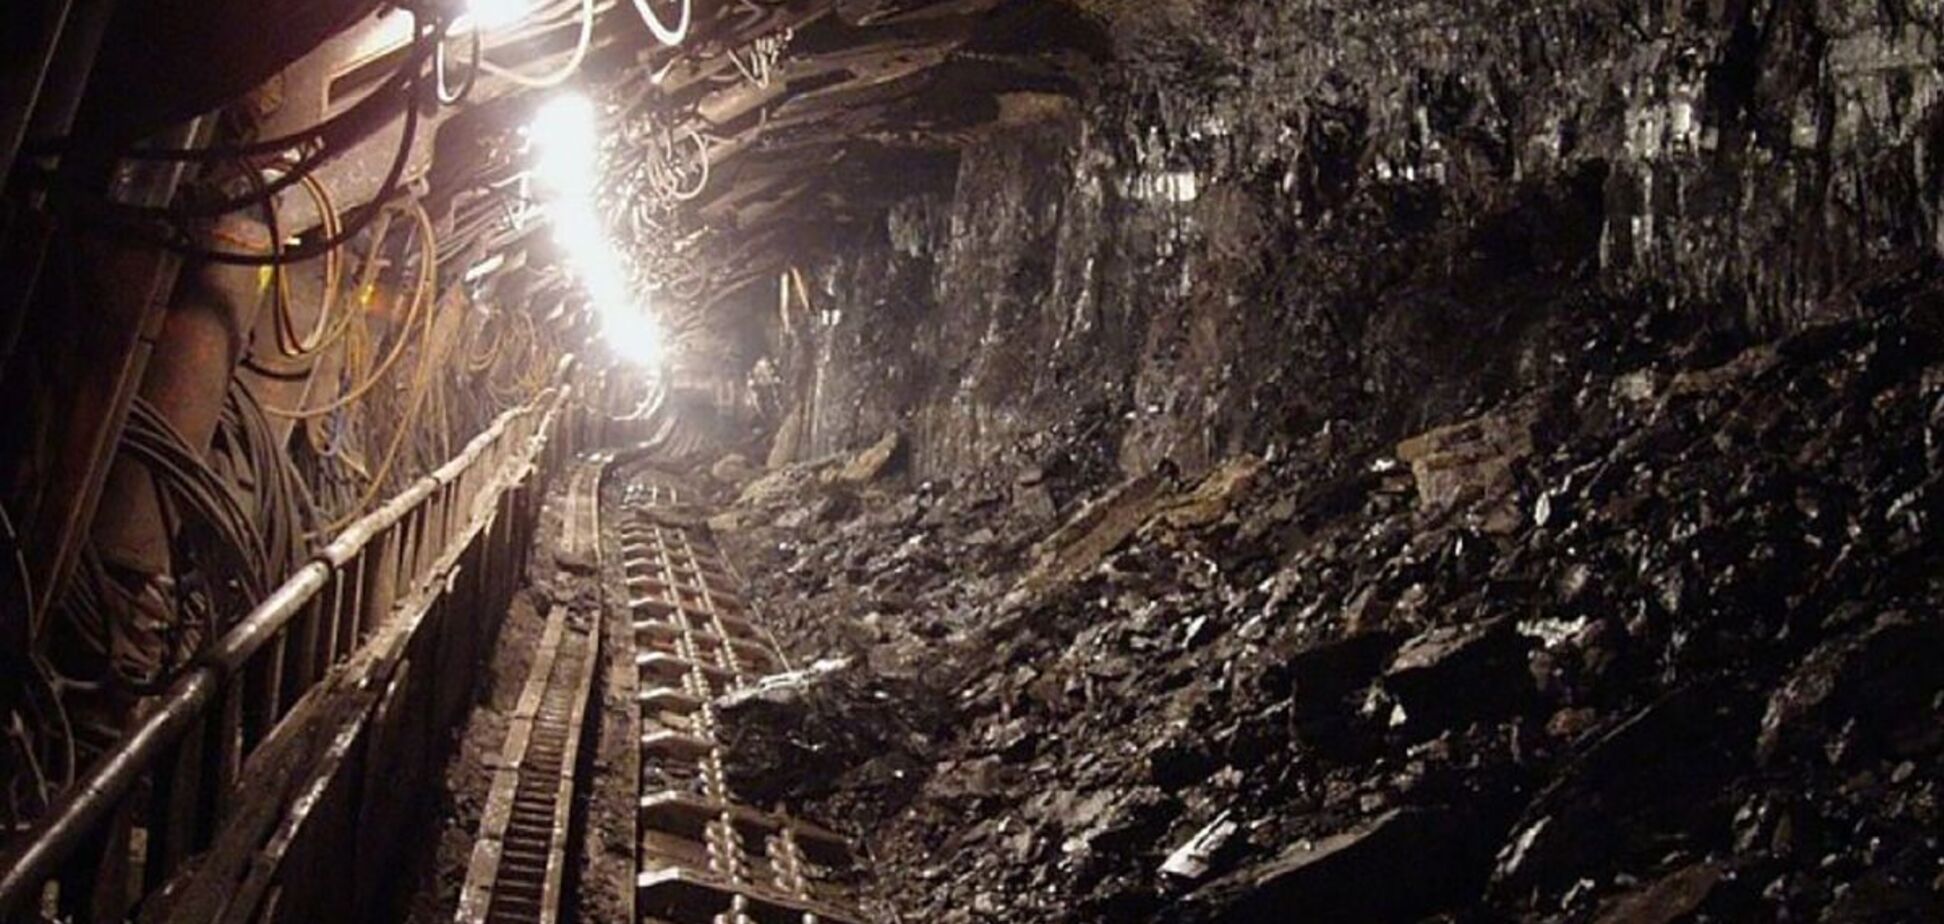 Договориться с горняками не удалось, шахты готовят к остановке – заявление КЖРК